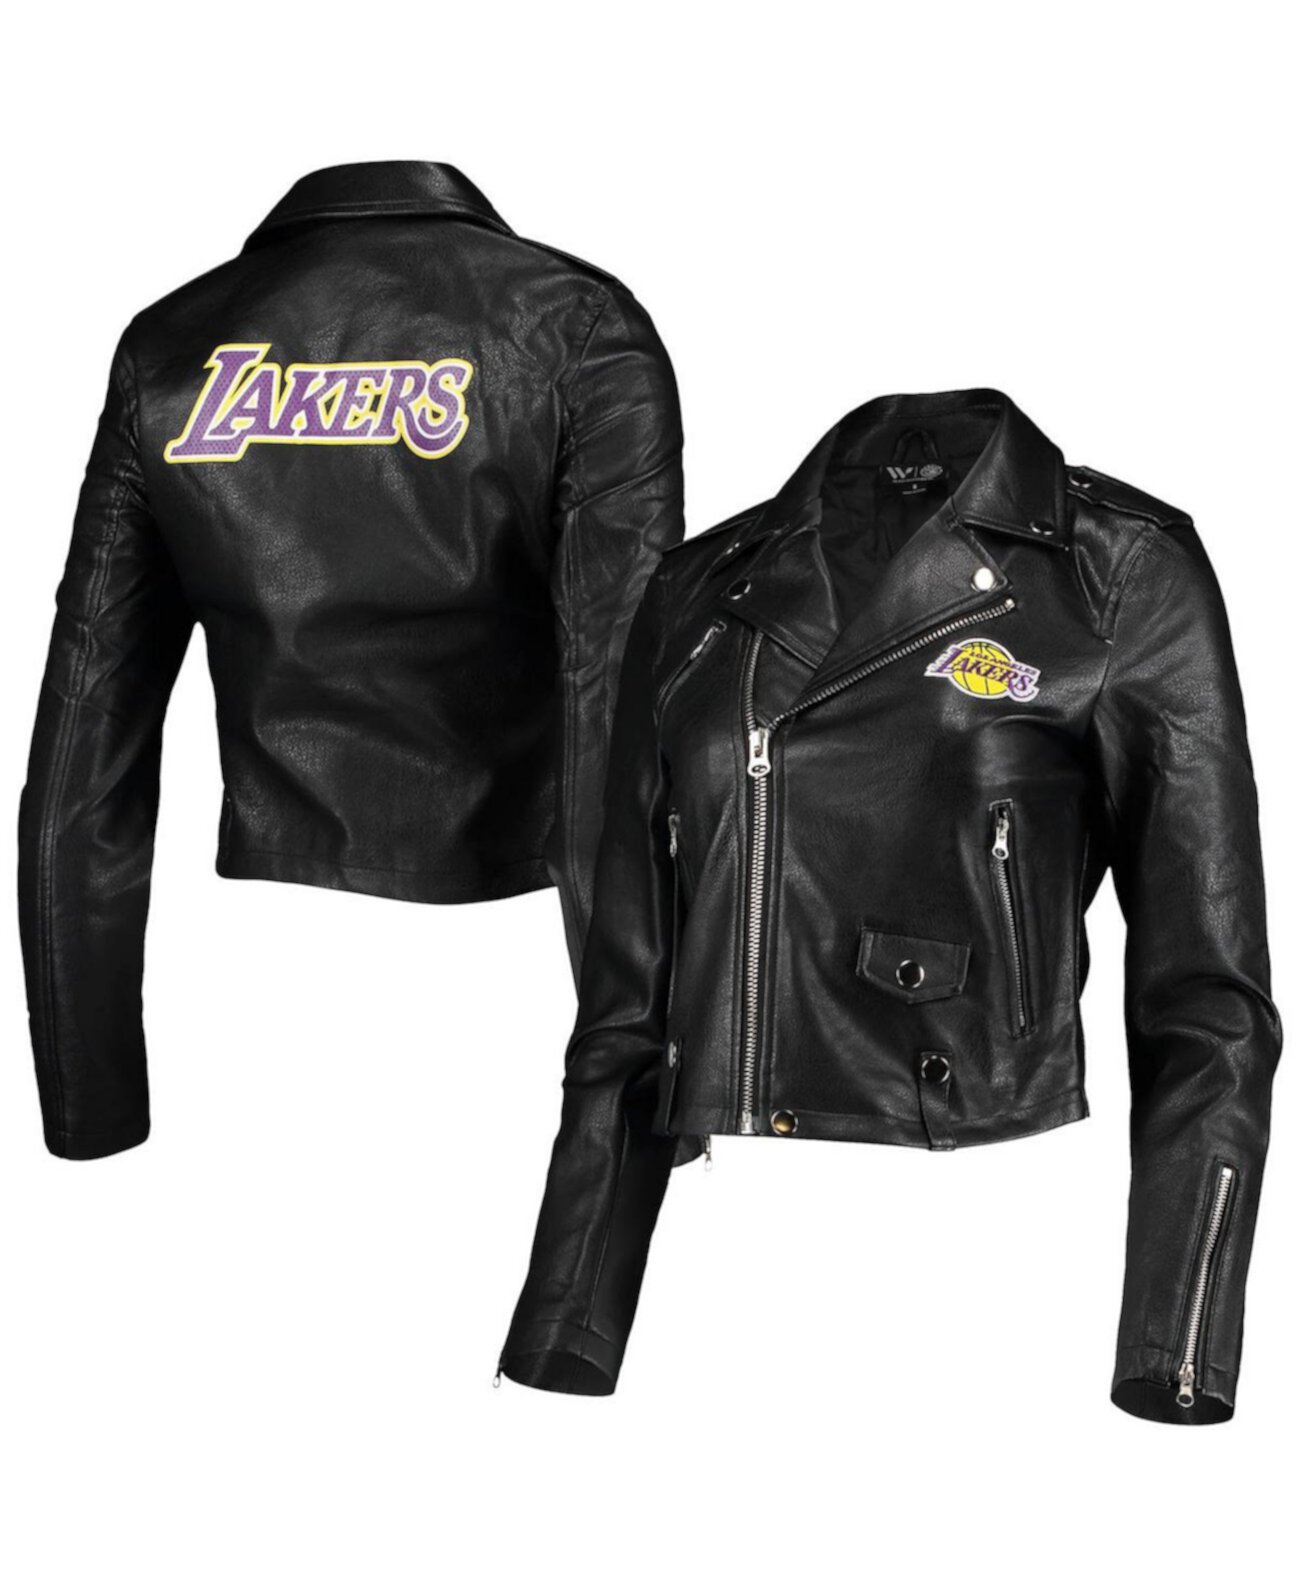 Женская черная куртка Los Angeles Lakers Moto с молнией во всю длину The Wild Collective